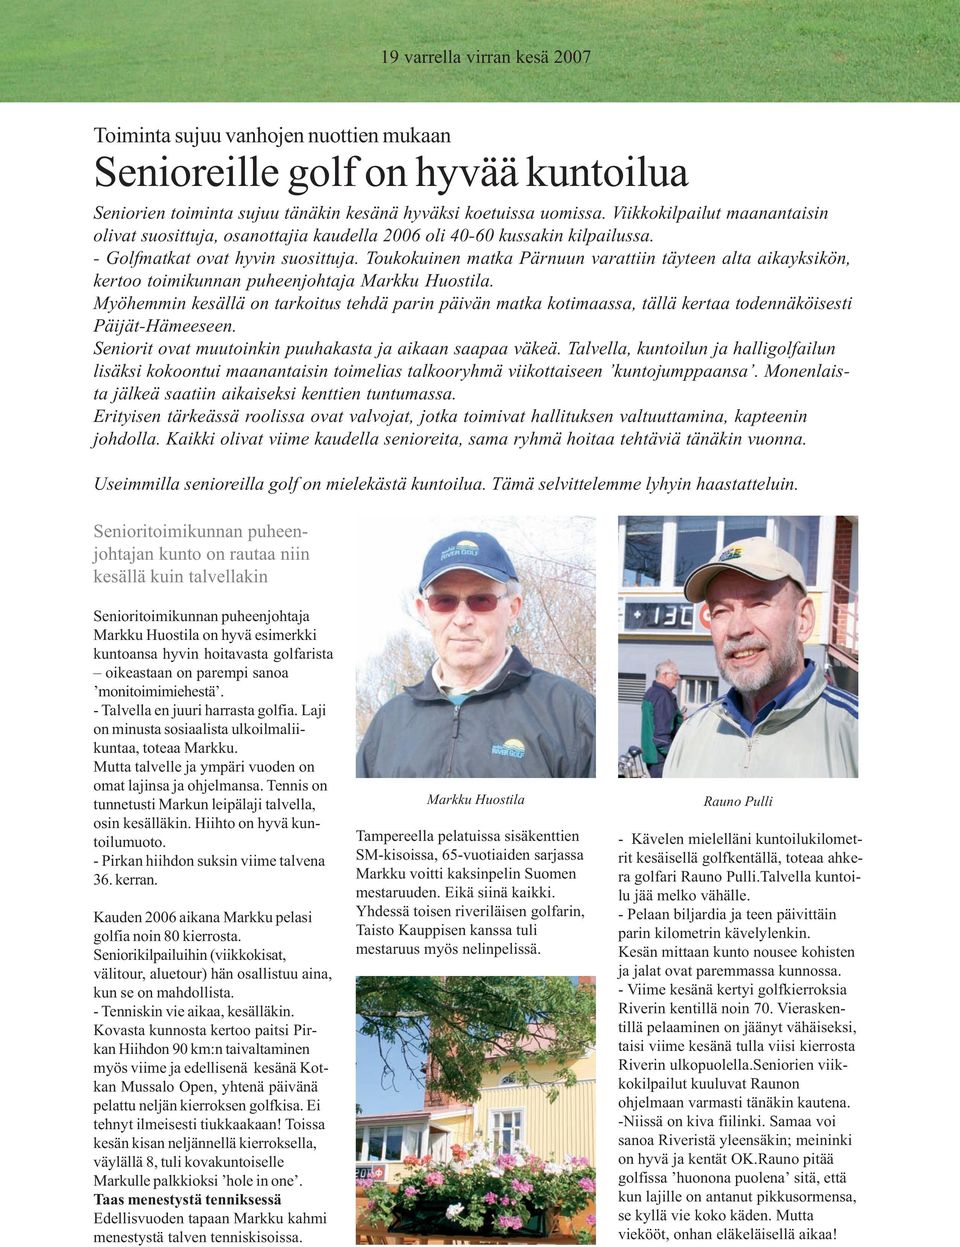 Toukokuinen matka Pärnuun varattiin täyteen alta aikayksikön, kertoo toimikunnan puheenjohtaja Markku Huostila.